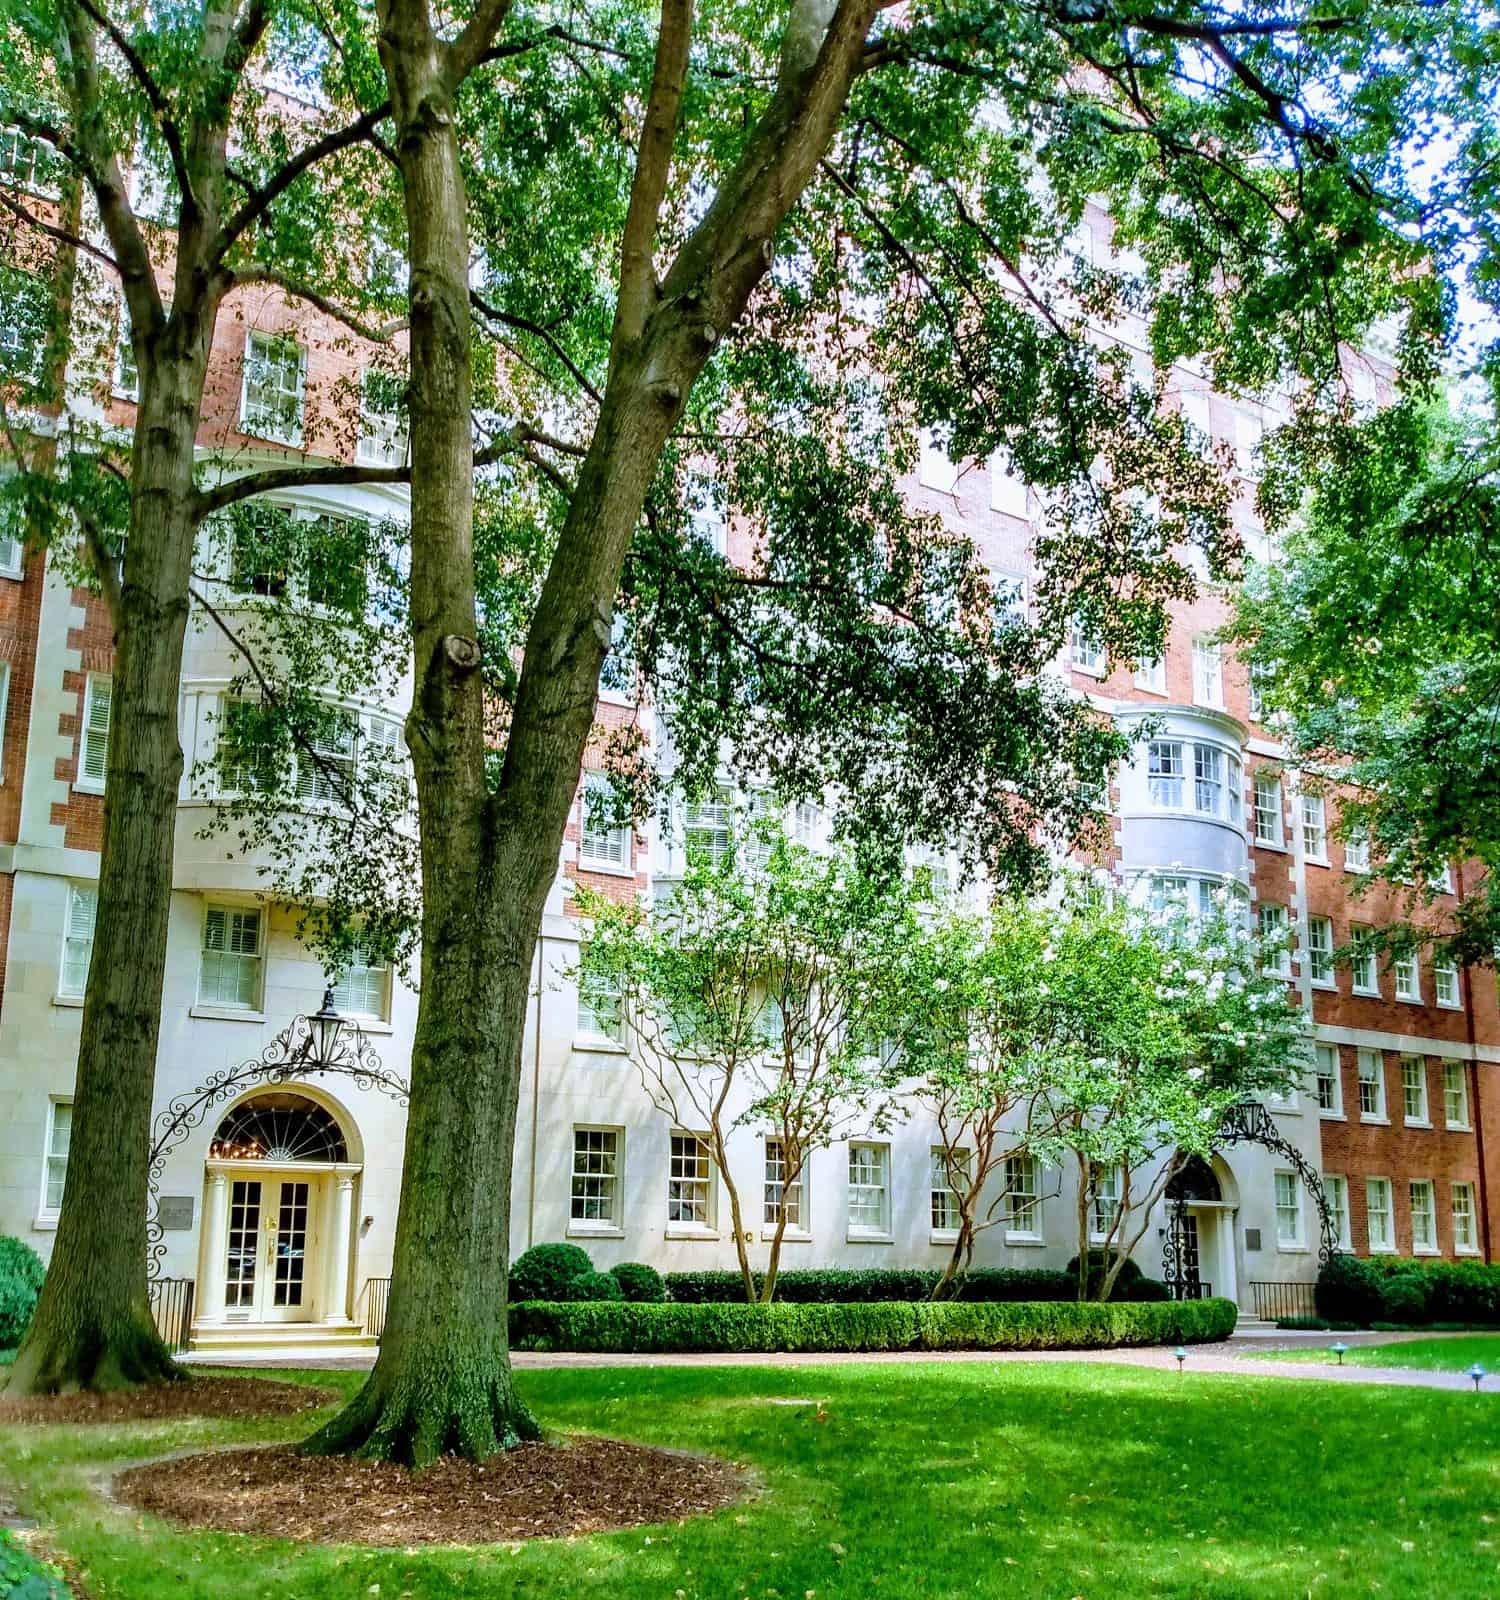 Una bellissima giornata nel campus della Emory University di Atlanta, Georgia.